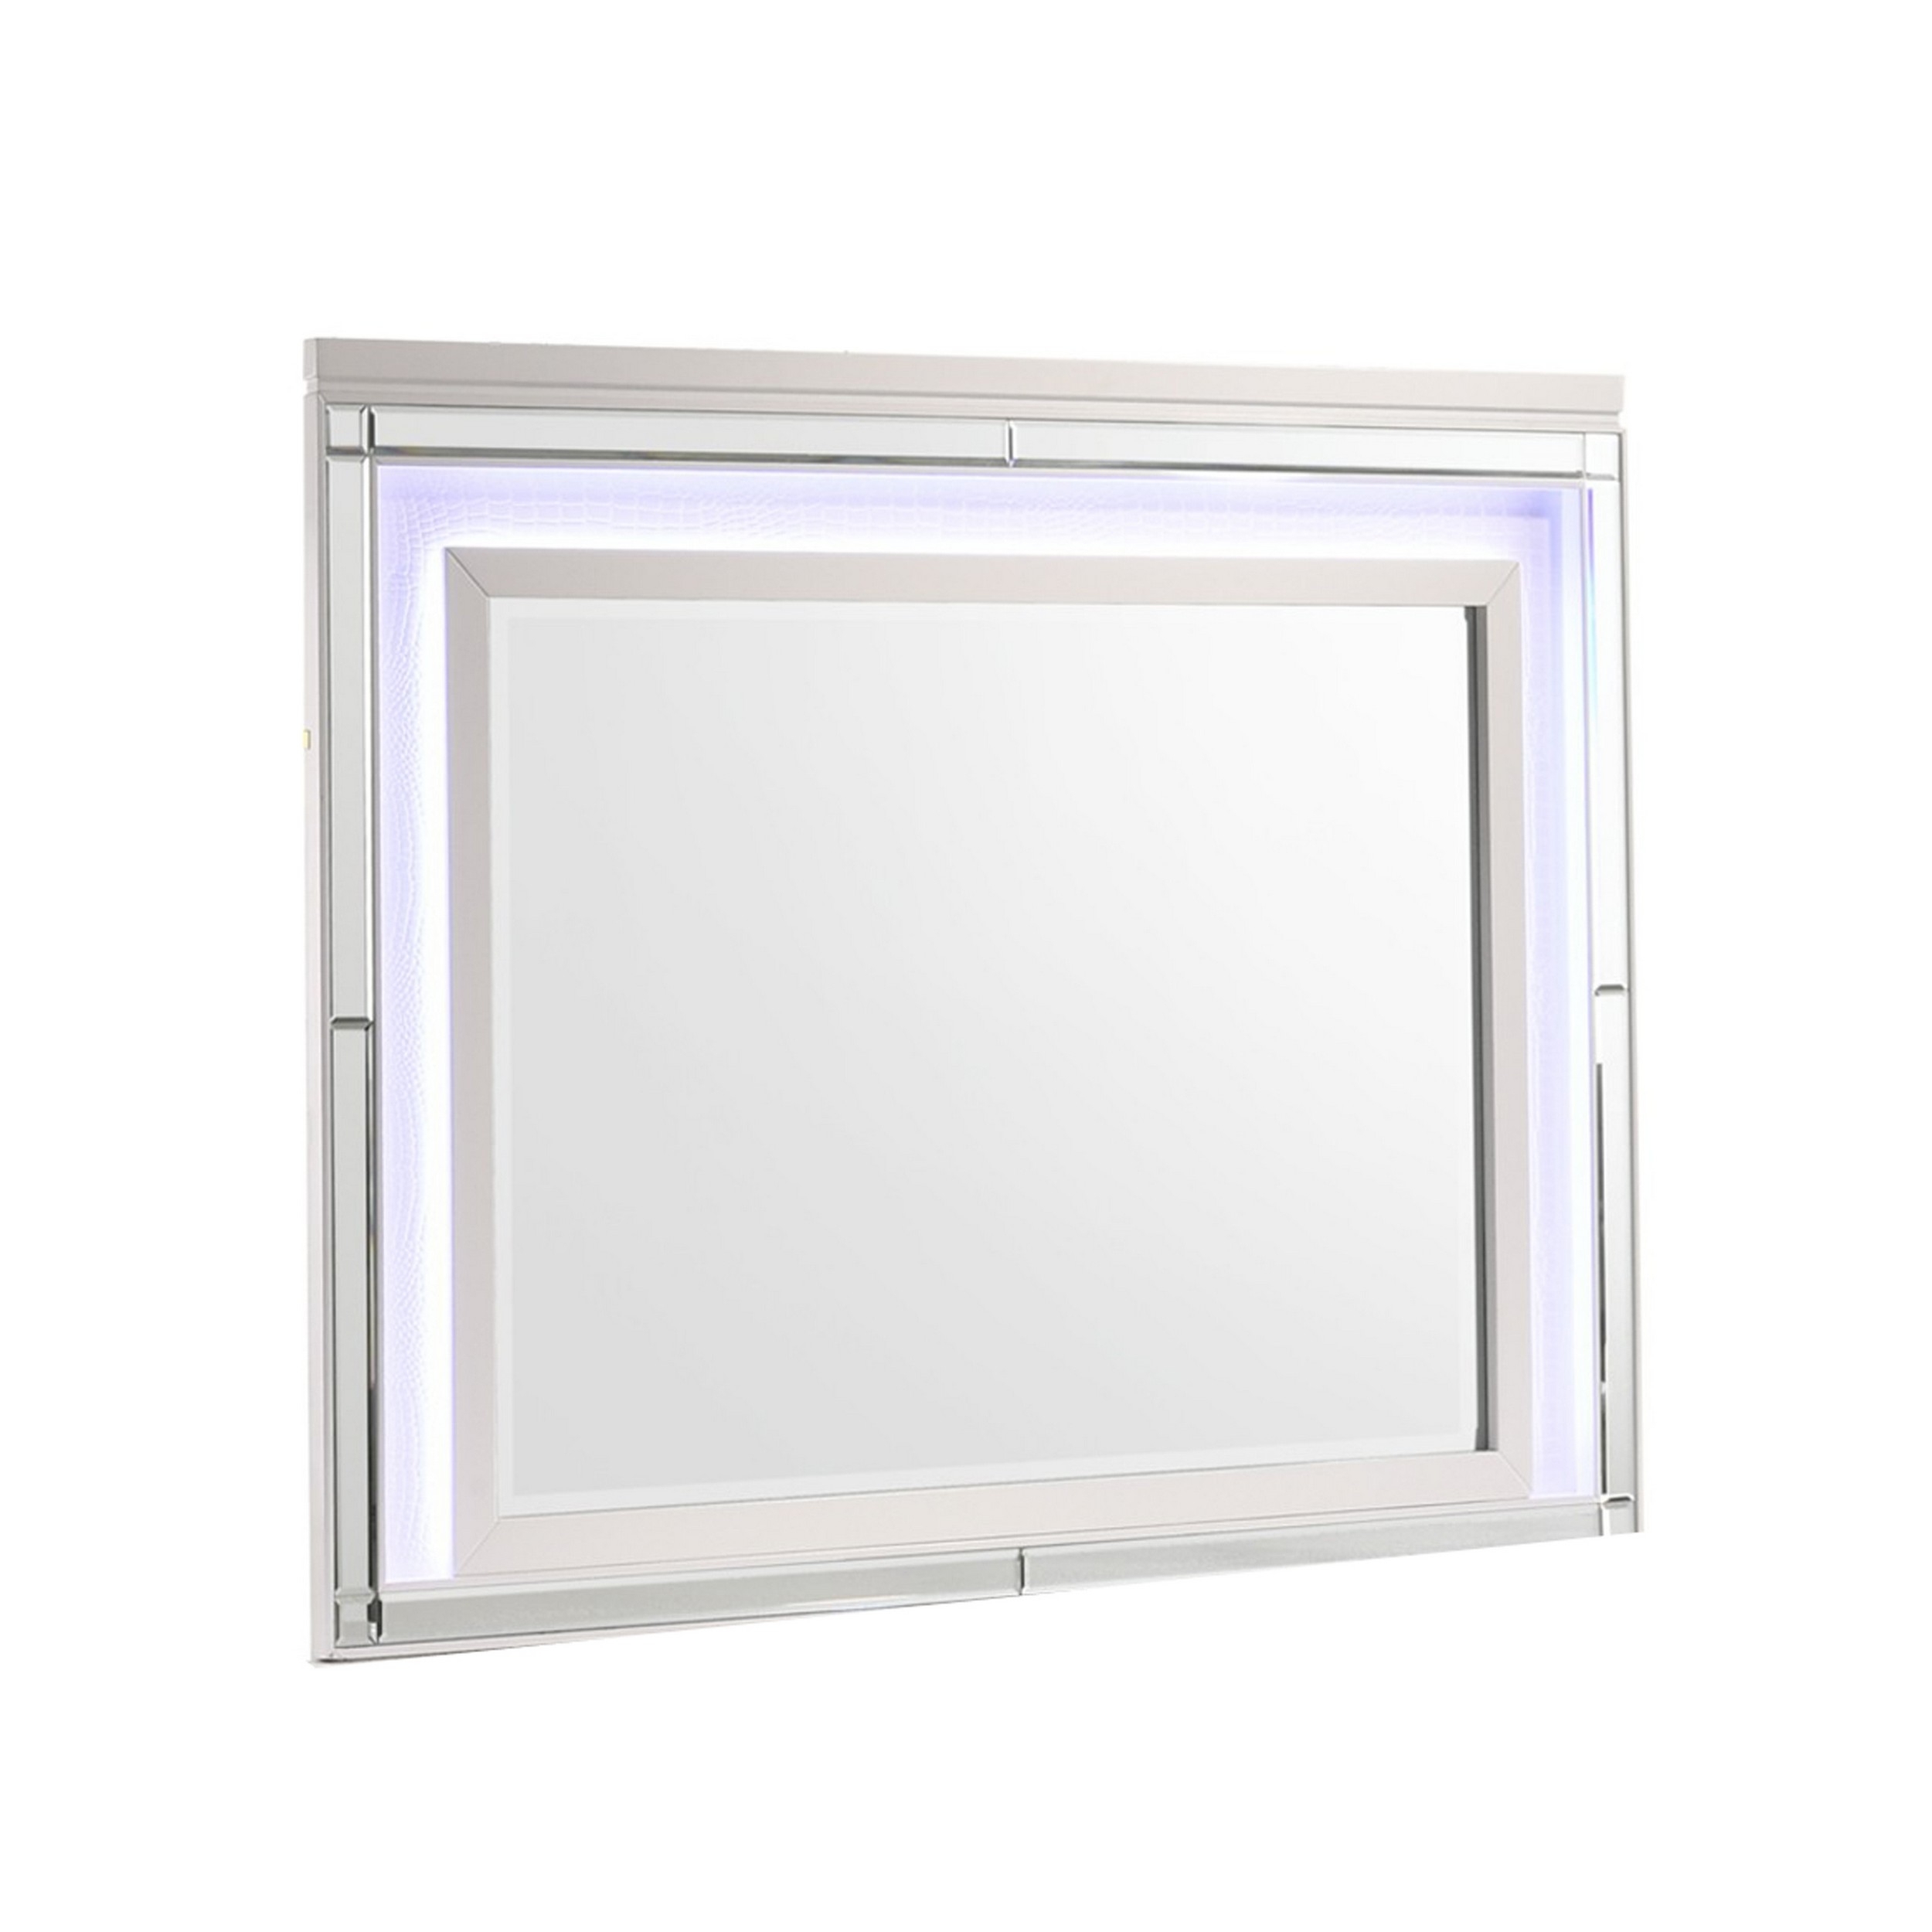 Lee 38 X 50 Dresser Mirror, Modern LED Light Trim, White Hardwood Frame -Saltoro Sherpi